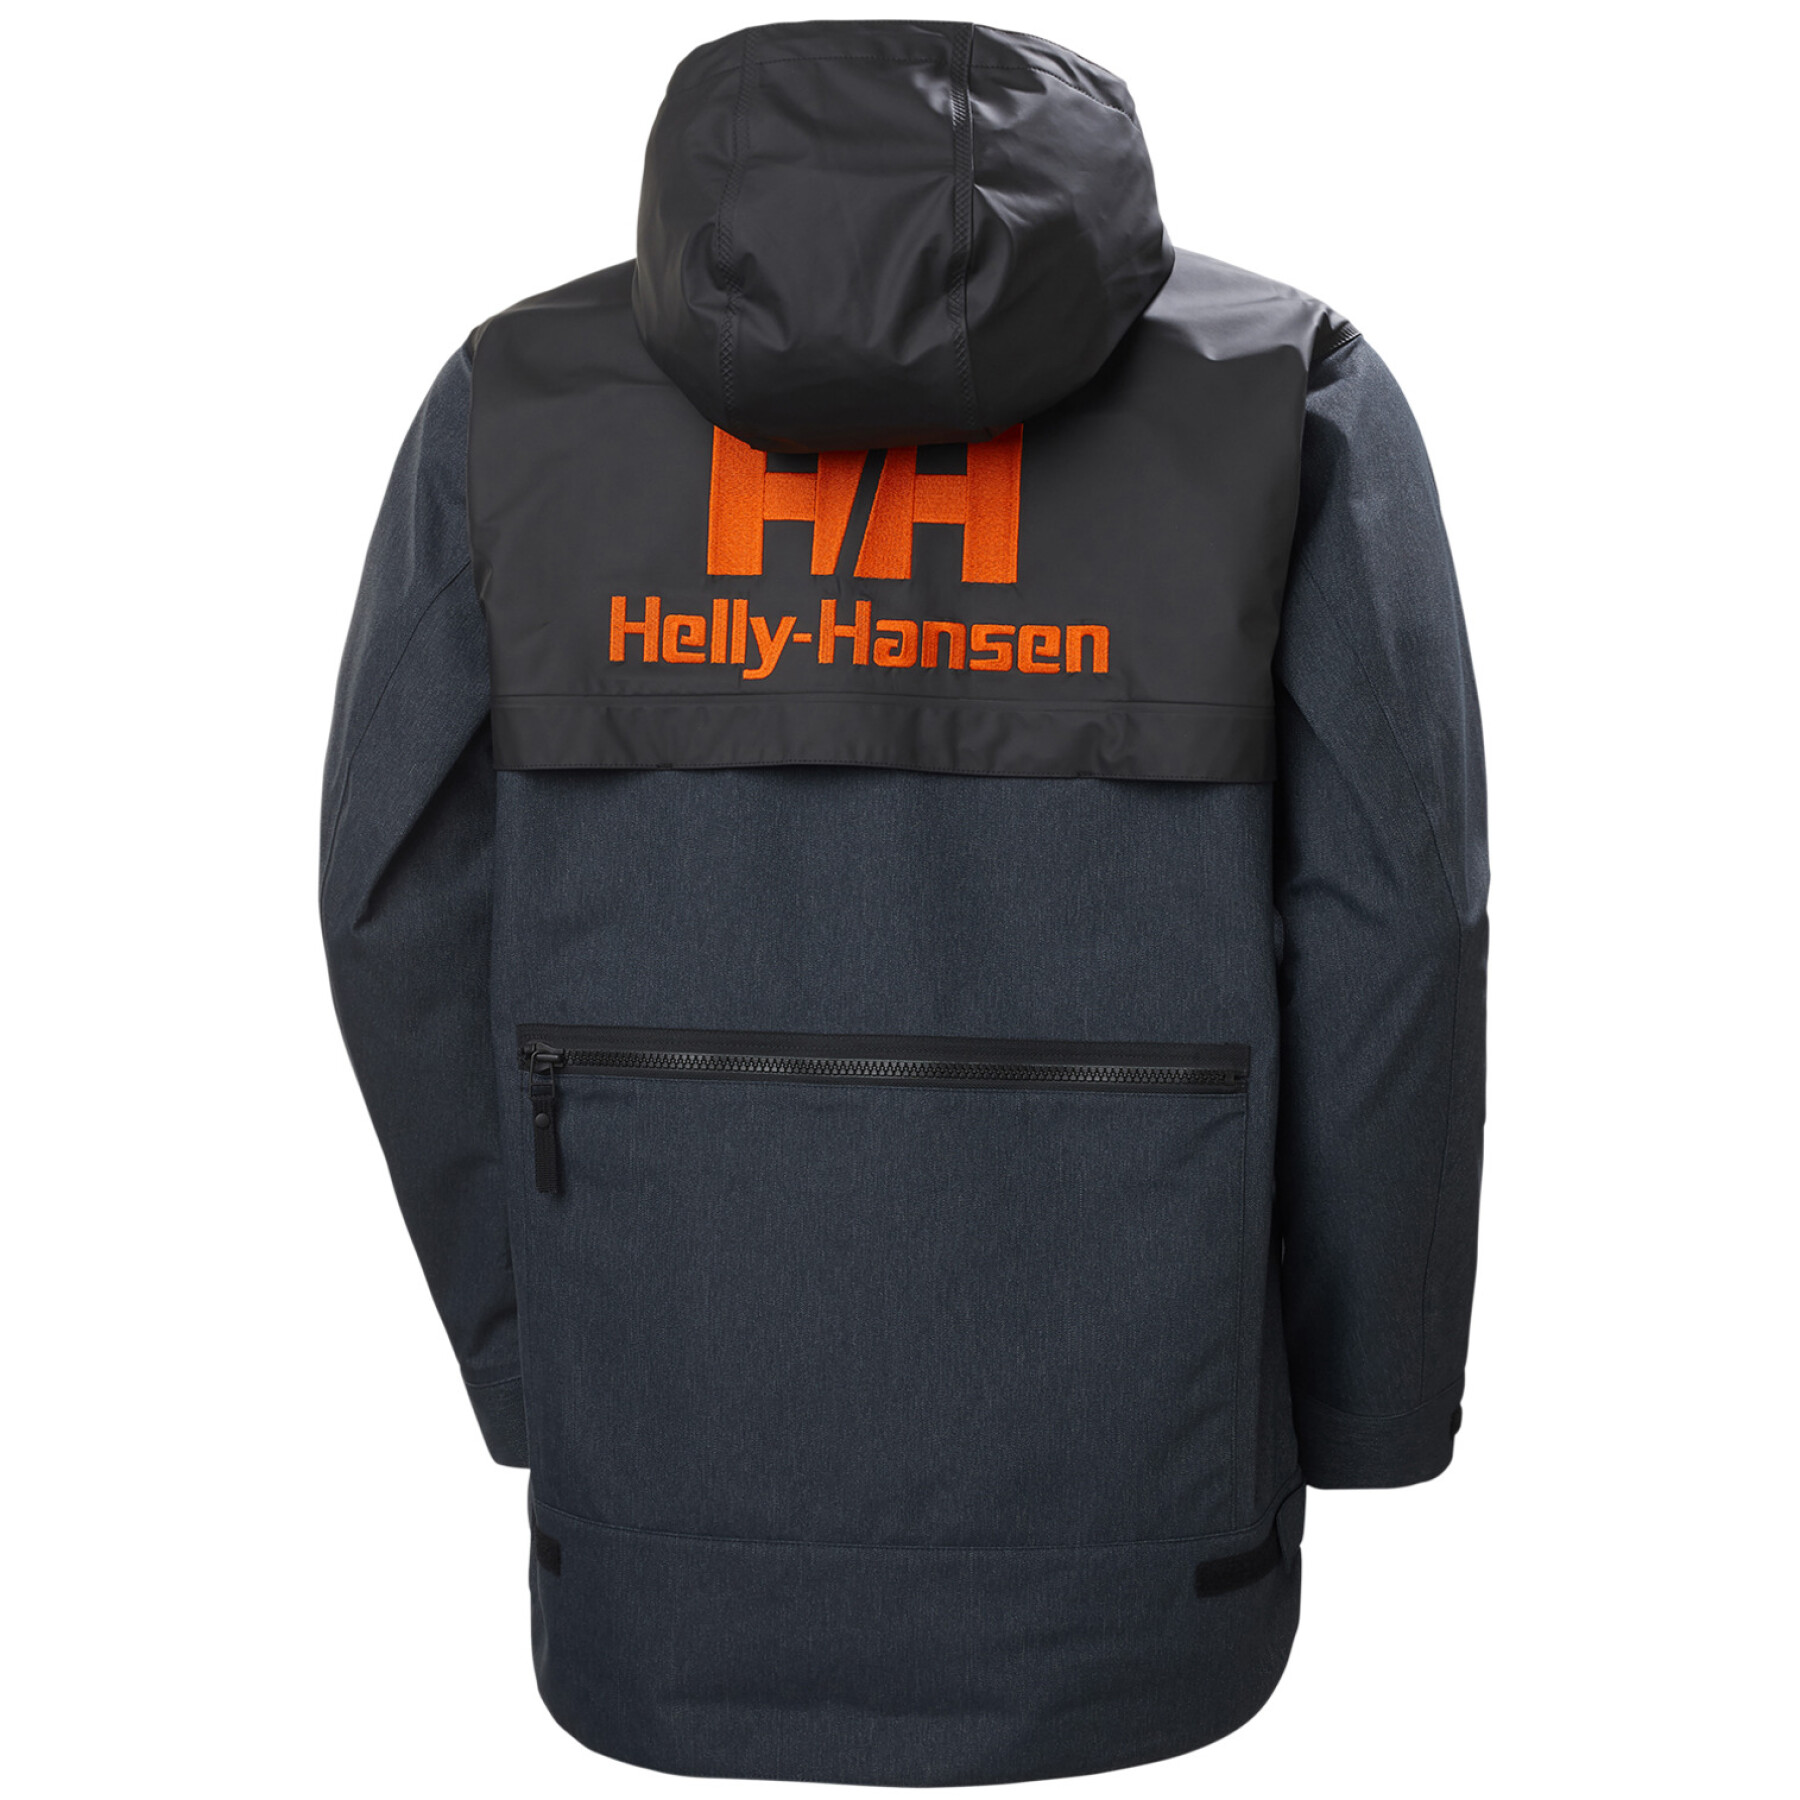 Hybrid waterproof jacket Helly Hansen Heritage